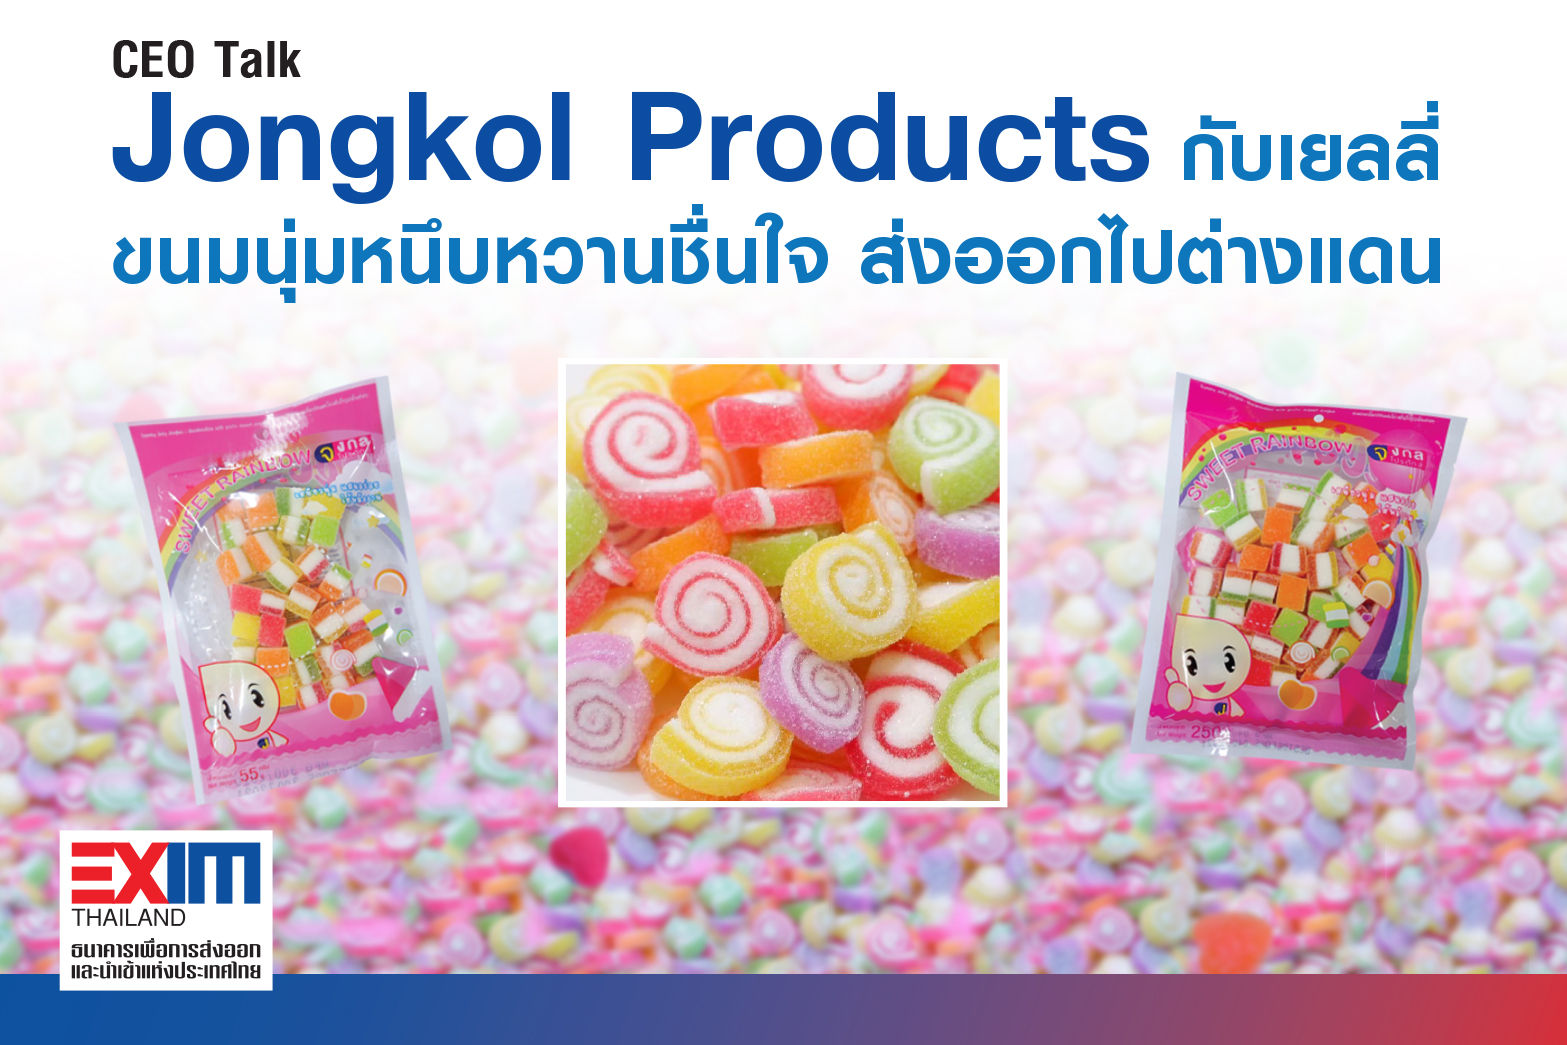 “Jongkol Products” กับเยลลี่ ขนมนุ่มหนึบหวานชื่นใจที่ไปได้ไกลถึงต่างแดน